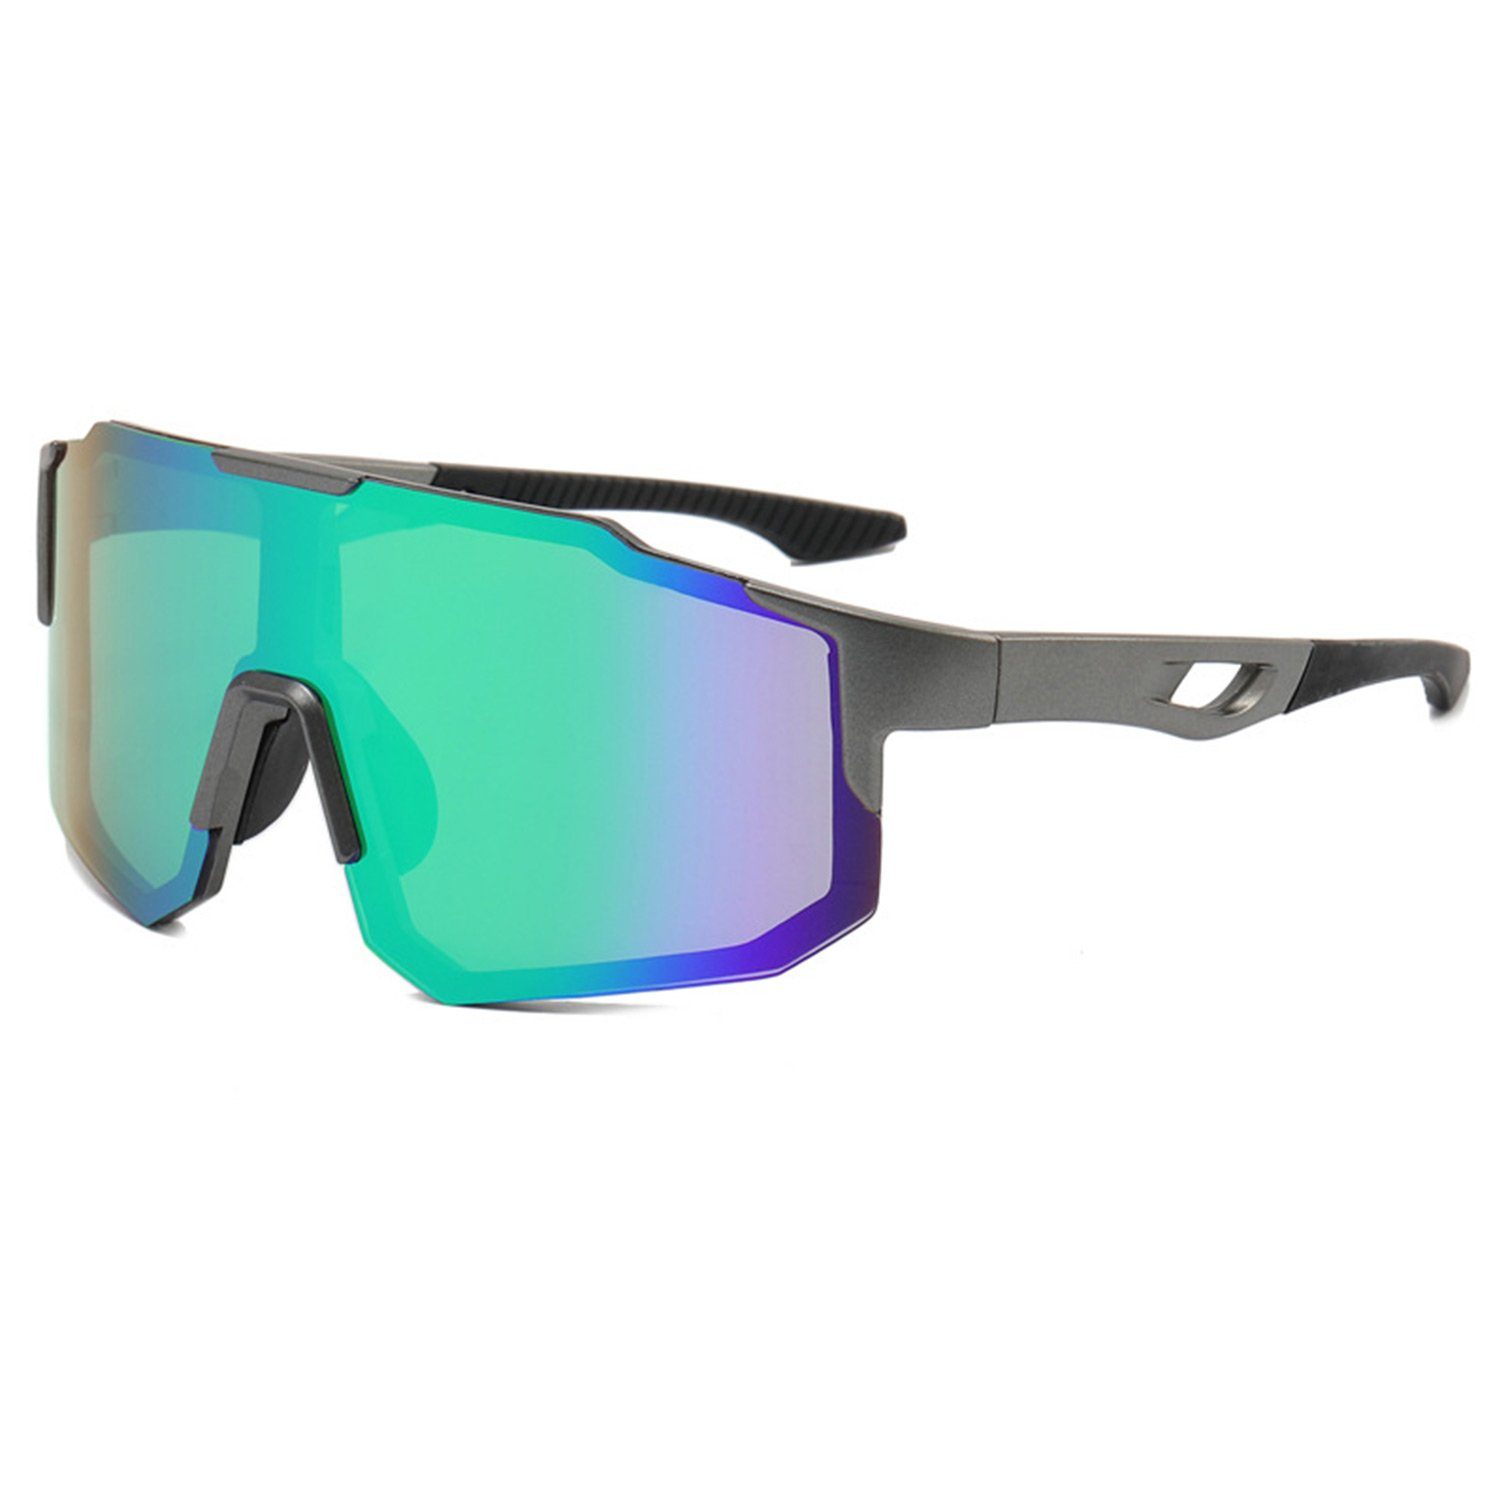 MAGICSHE Fahrradbrille Fahrradbrillen für Herren und Damen, Sport-Sonnenbrillen, Windschutzscheibe, UV-beständige und klare Sicht Brille Gewehrrahmen grüne Folie | Fahrradbrillen